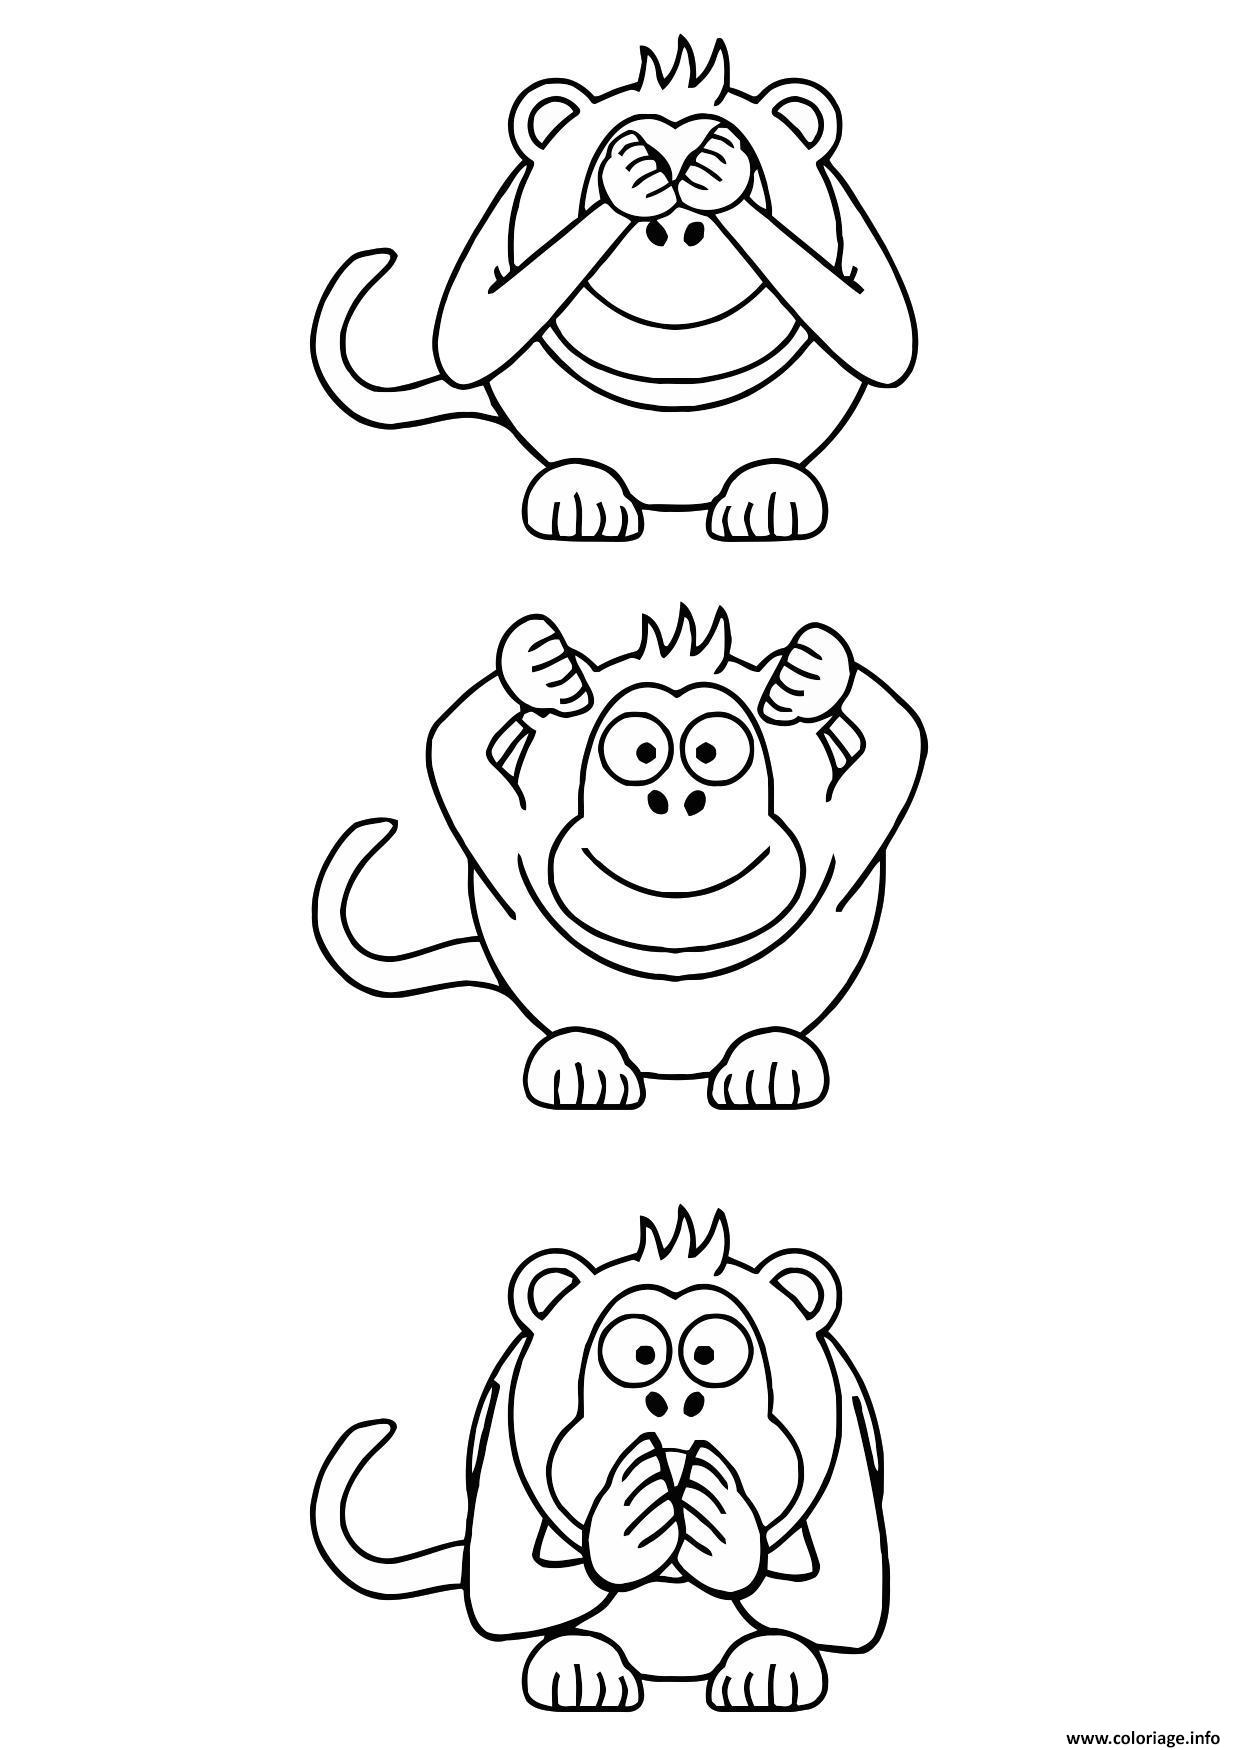 Dessin trois singes facile Coloriage Gratuit à Imprimer